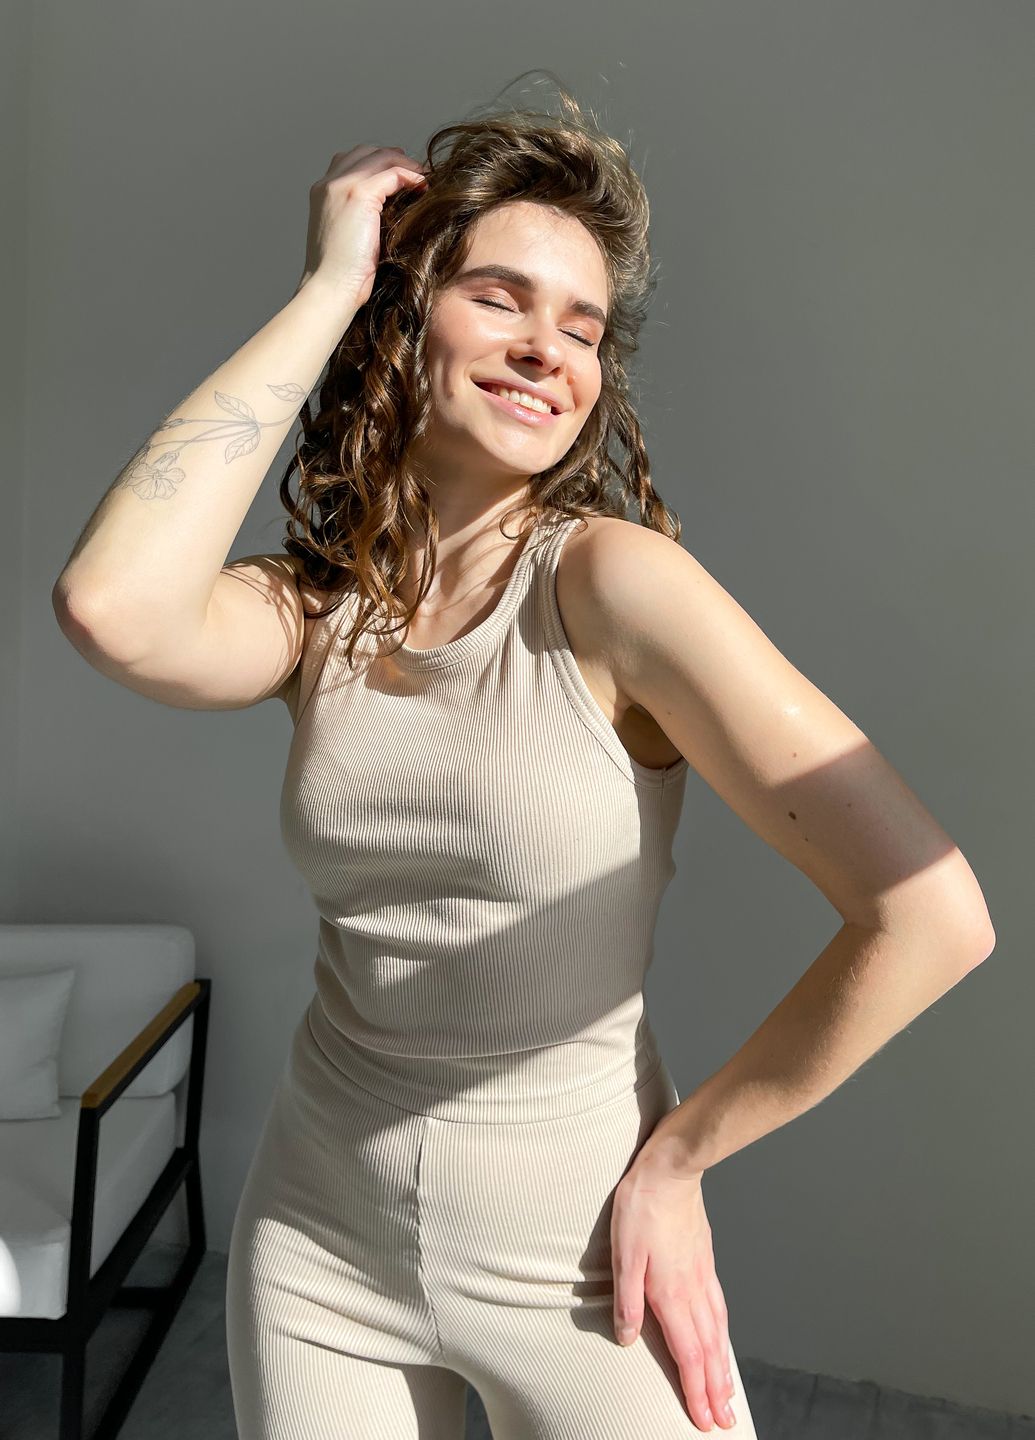 Купить Костюм женский в рубчик топ с лосинами светло-бежевый Merlini Сотто 100000442, размер XS-M (40-44) в интернет-магазине